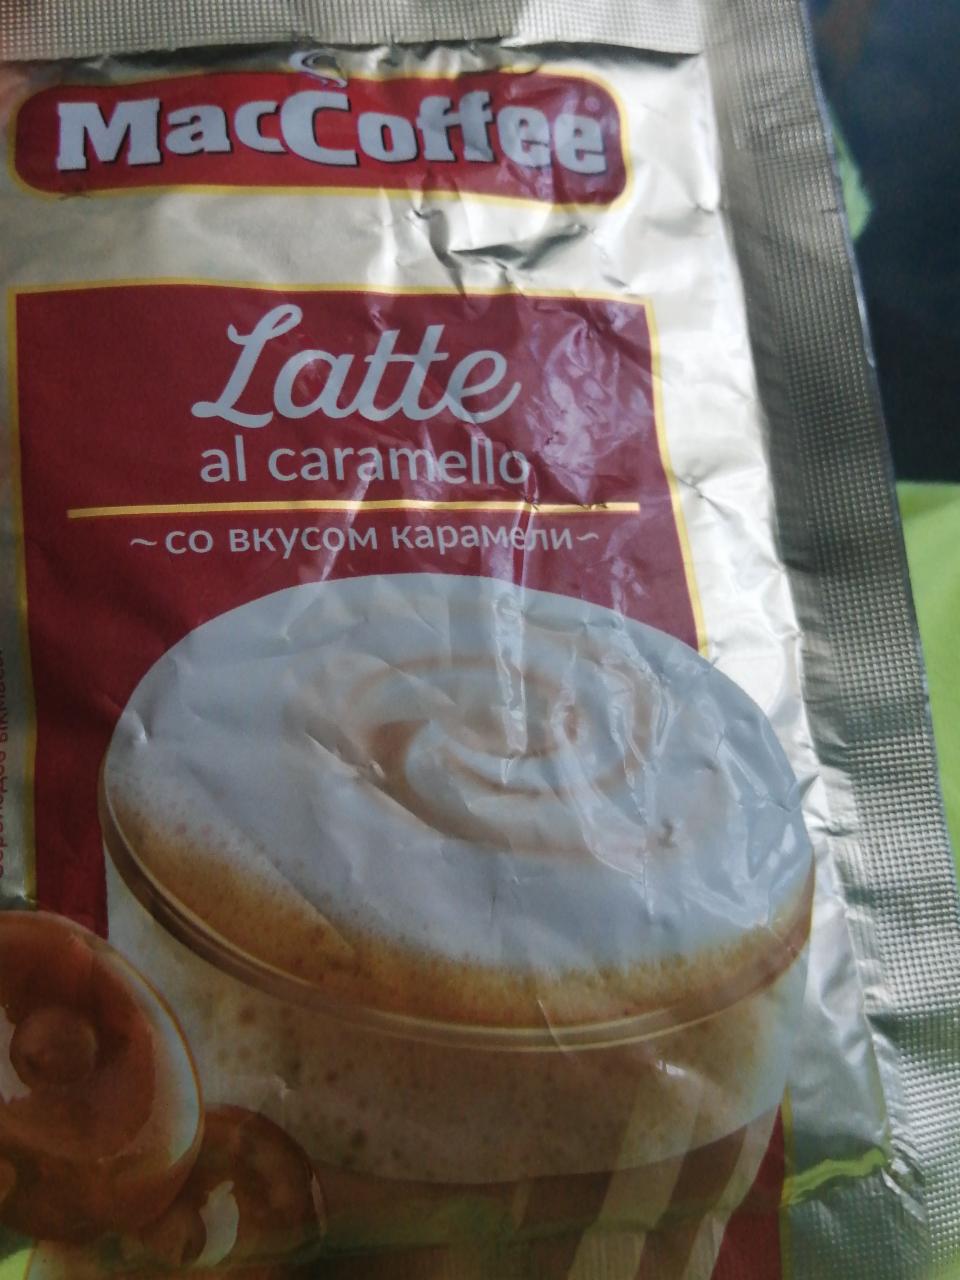 Фото - Maccoffee latte al caramello кофе со вкусом карамели